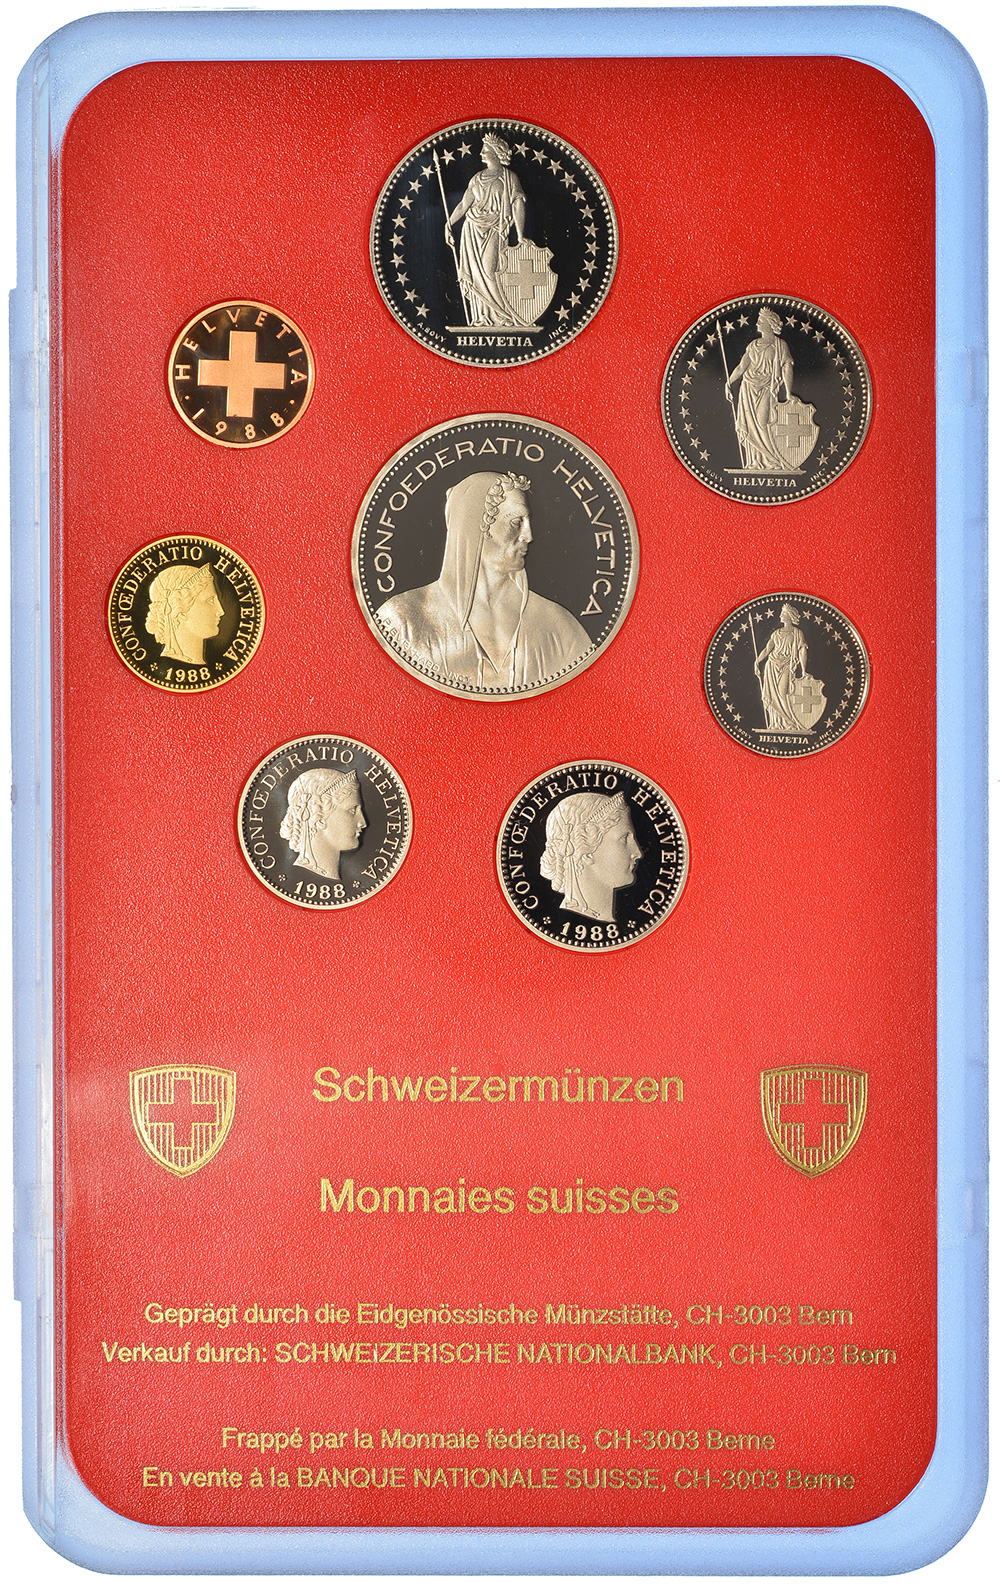 Münzensatz, 1988, Polierte Platte, Kupfer/Nickel